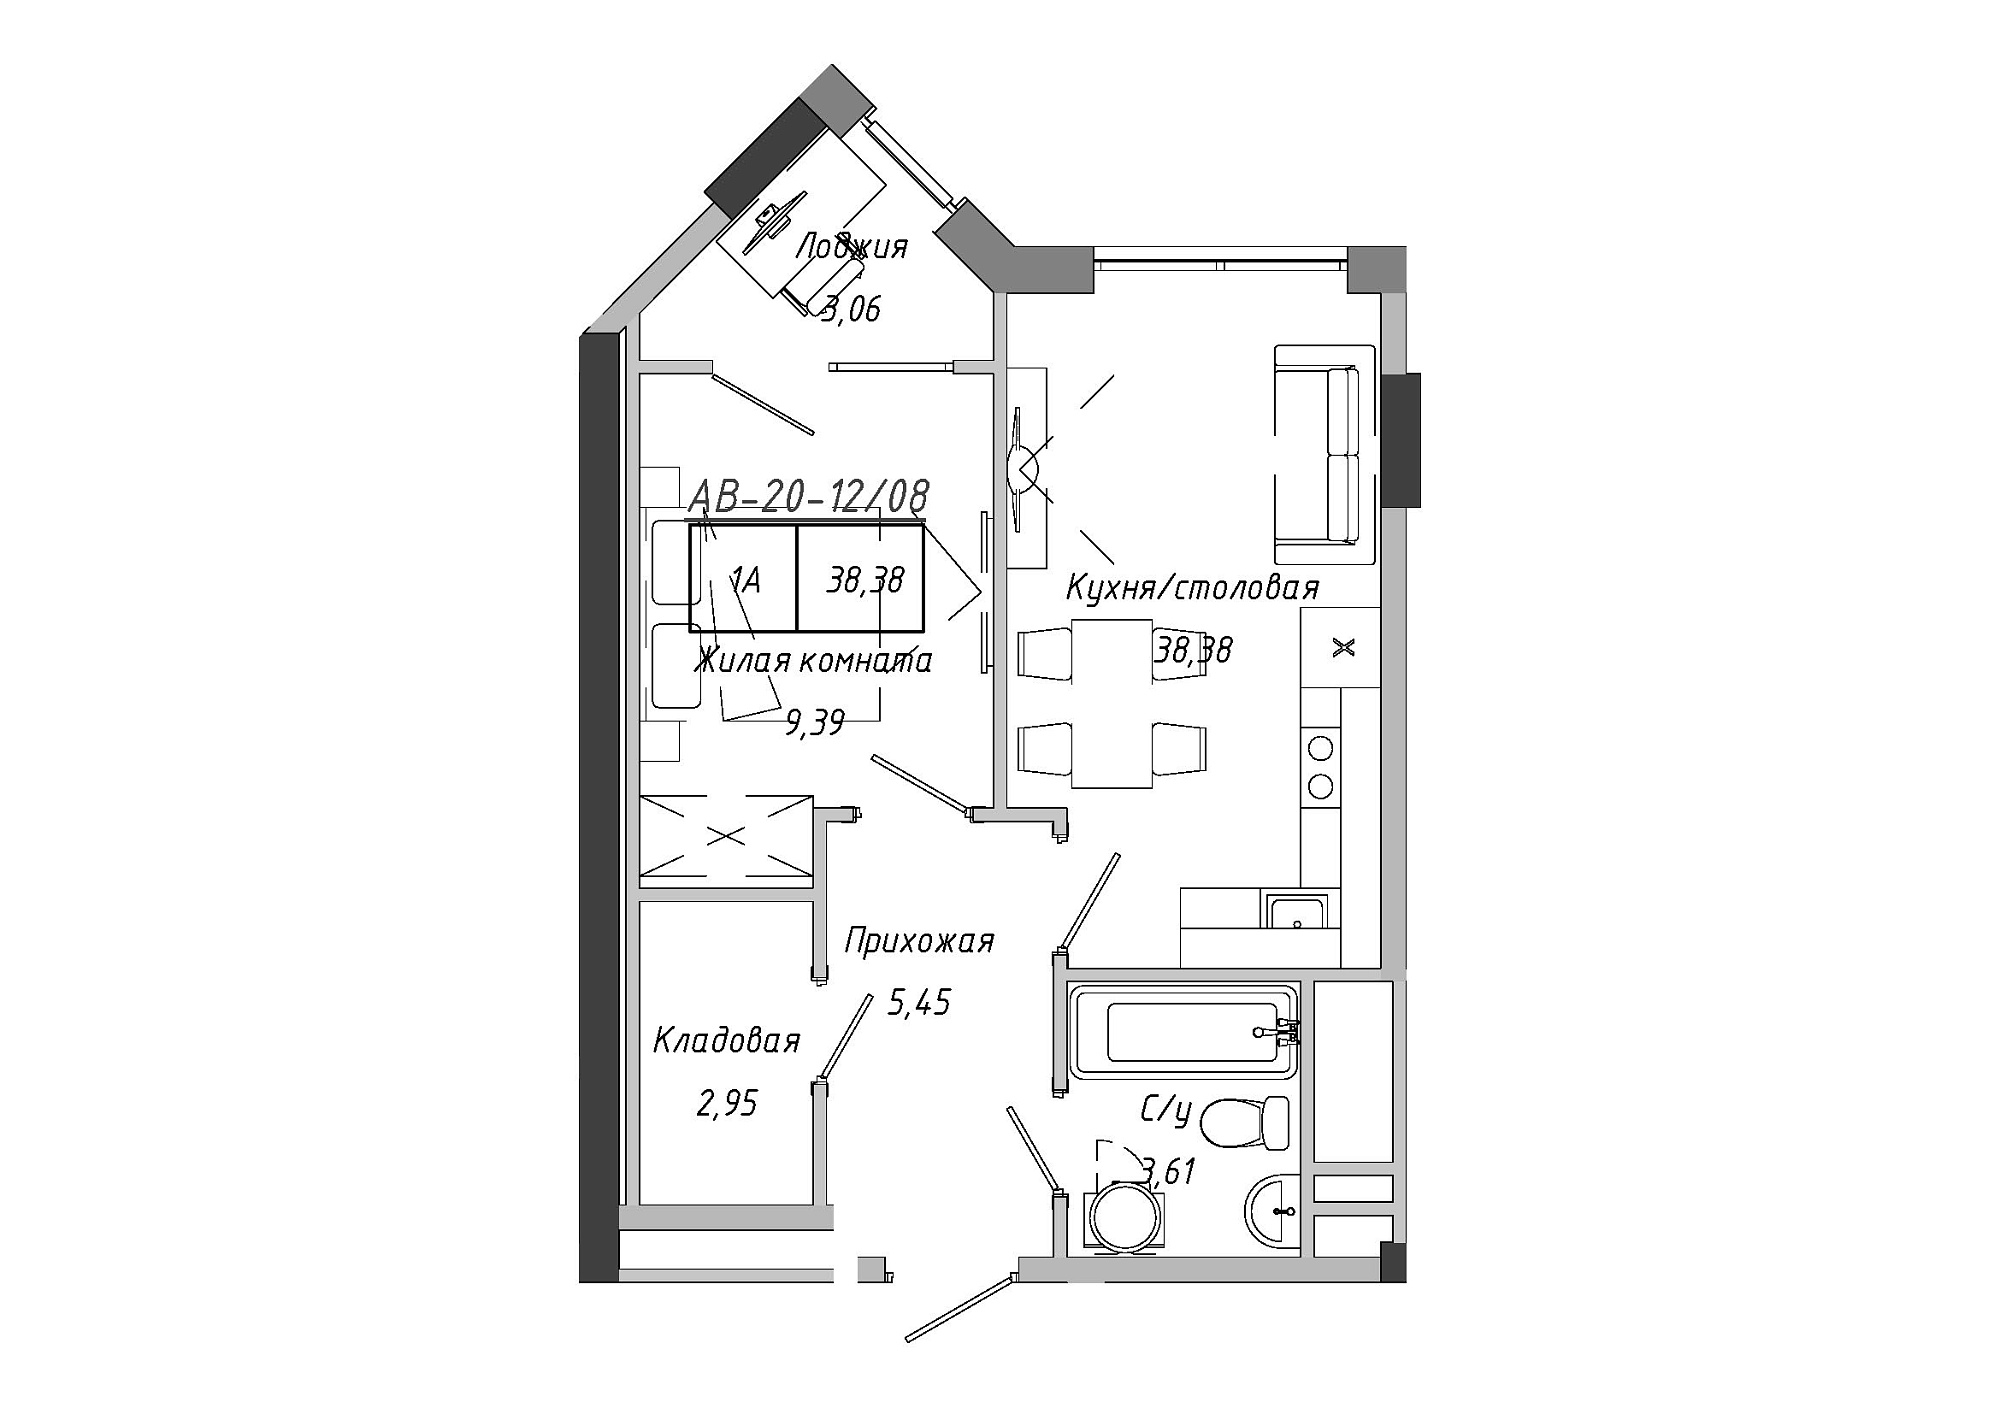 Планировка 1-к квартира площей 38.85м2, AB-20-12/00008.